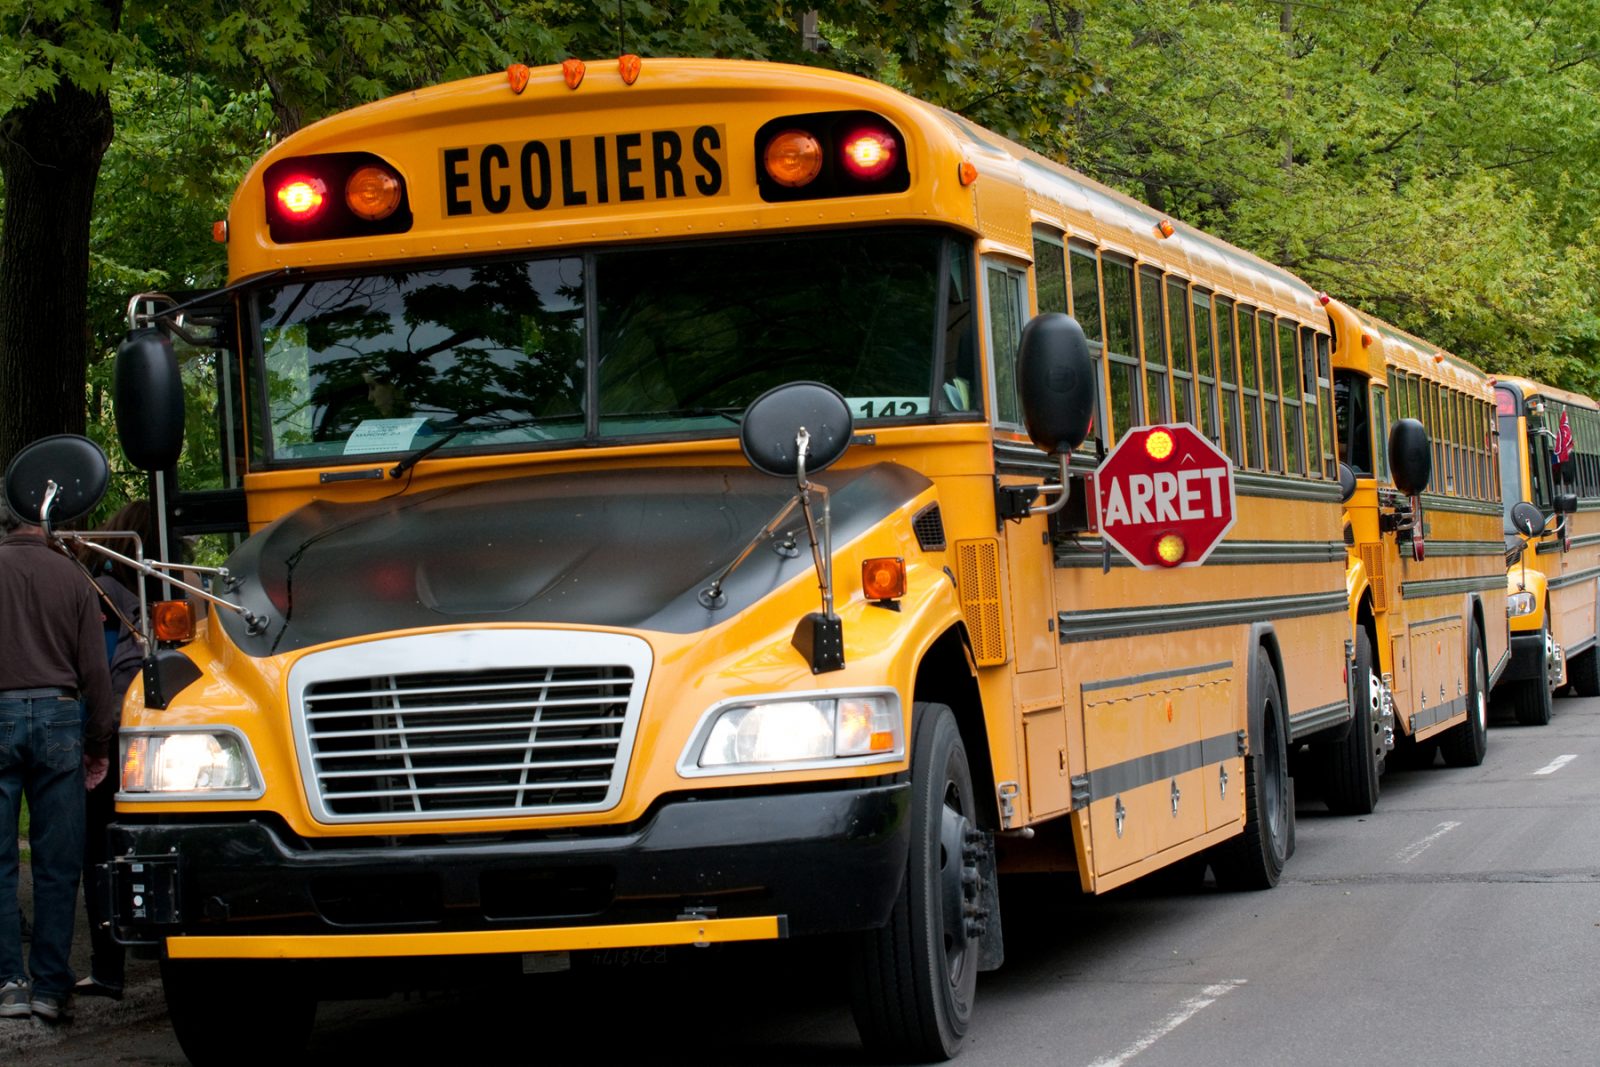 Rentrée scolaire : la Sûreté du Québec intensifie ses interventions près des écoles